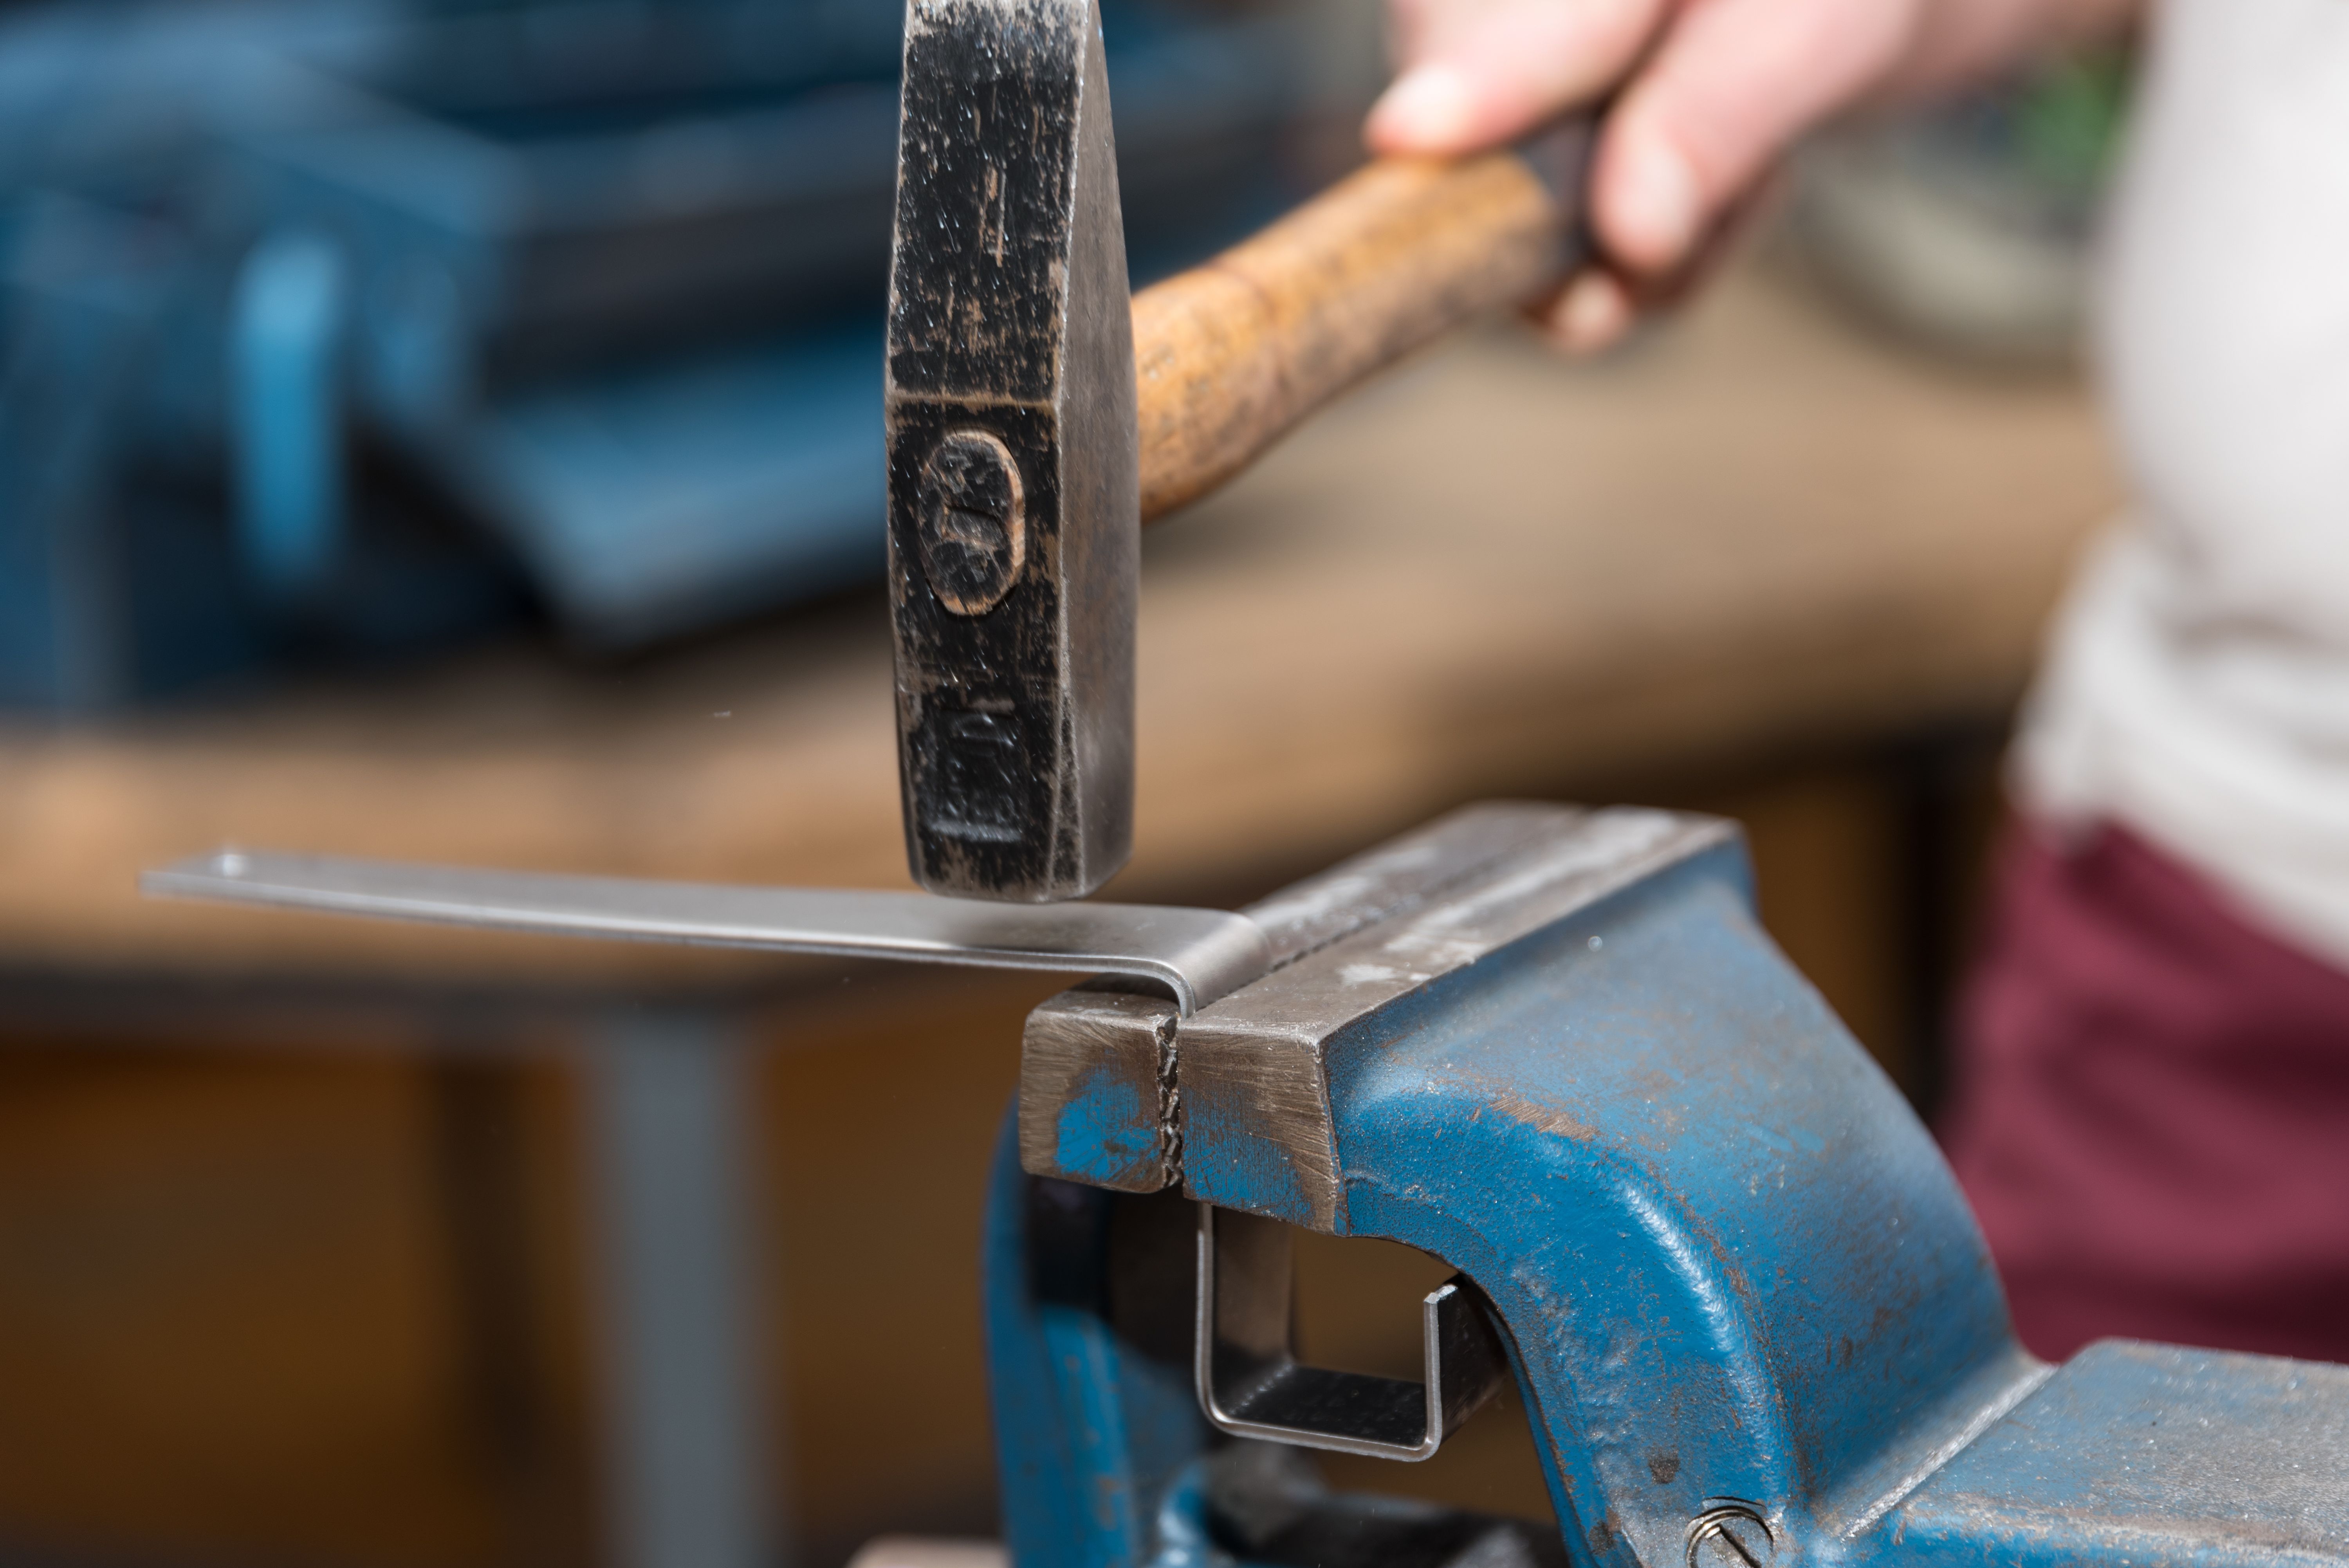 Der Schlosshammer ist optimal für unkomplizierte Klopfarbeiten oder um einfach Nägel und Dübel in die Wand zu schlagen. Da er in beinahe jedem Werkzeugkoffer zu finden ist, gilt er als der Klassiker unter den Hämmern.